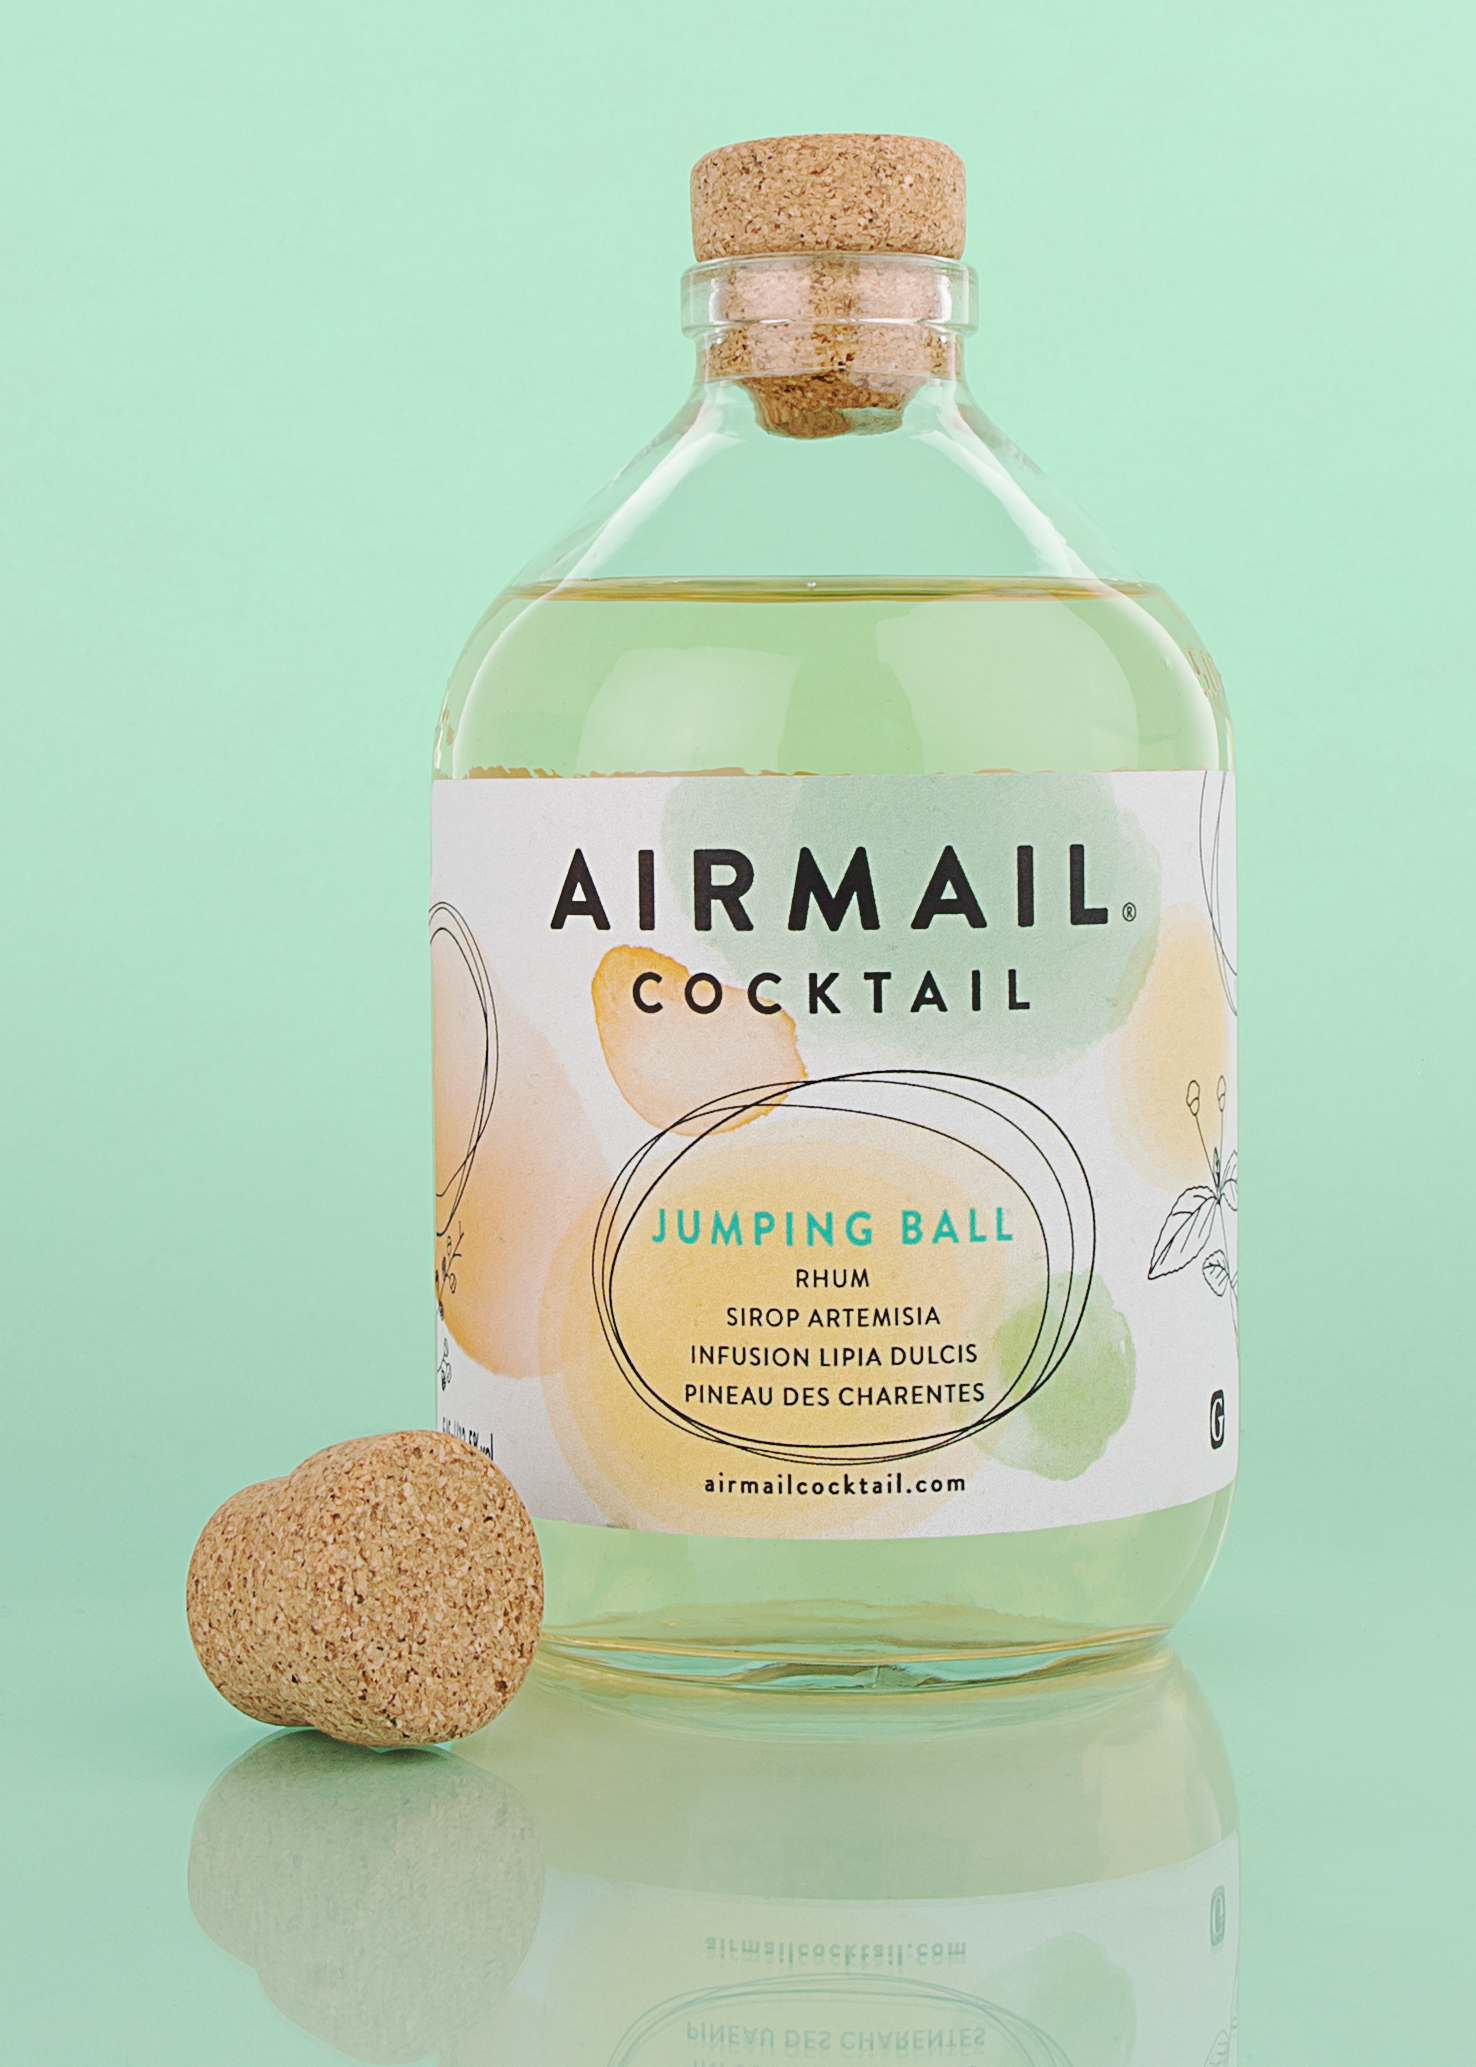 Packshot projet Airmail cocktail, cocktail charentais prêt à boire. Bouchon monomatériaux : shape. 